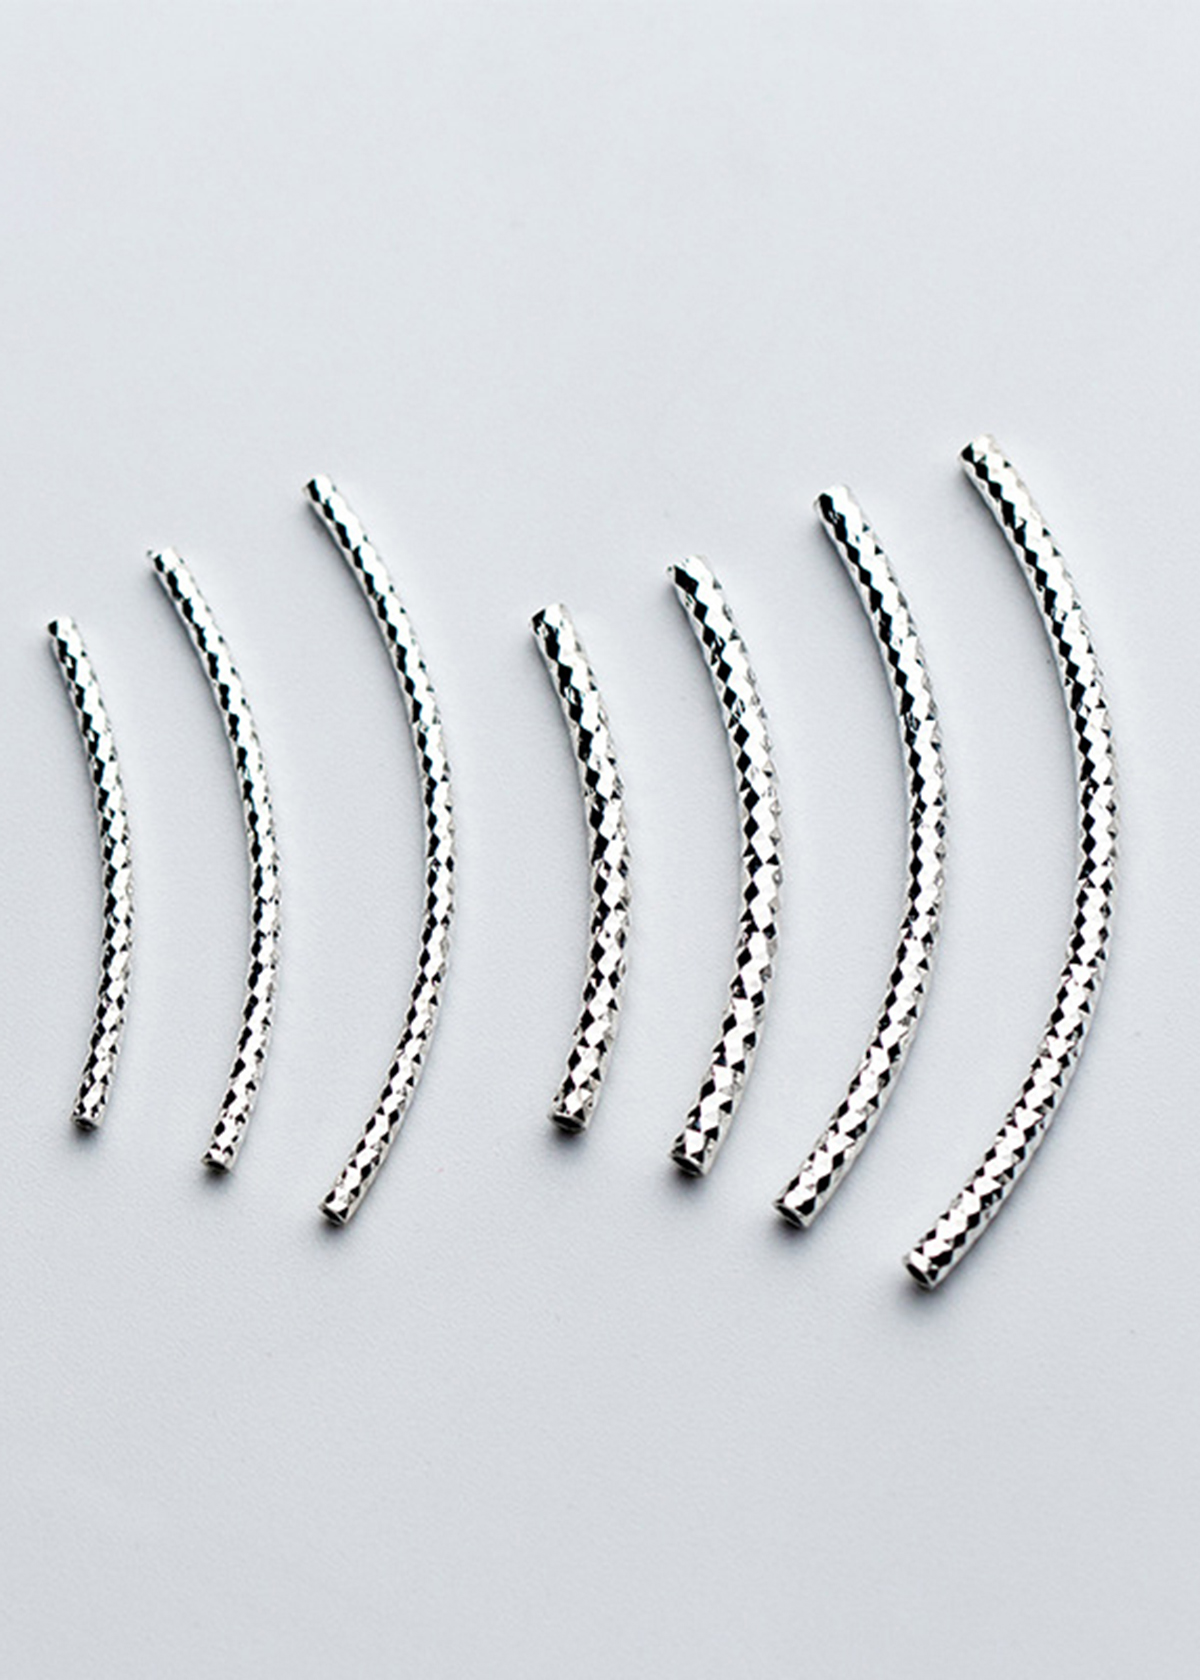 Hình ảnh Combo 4 cái charm bạc ống xoắn họa tiết xỏ ngang - Ngọc Quý Gemstones